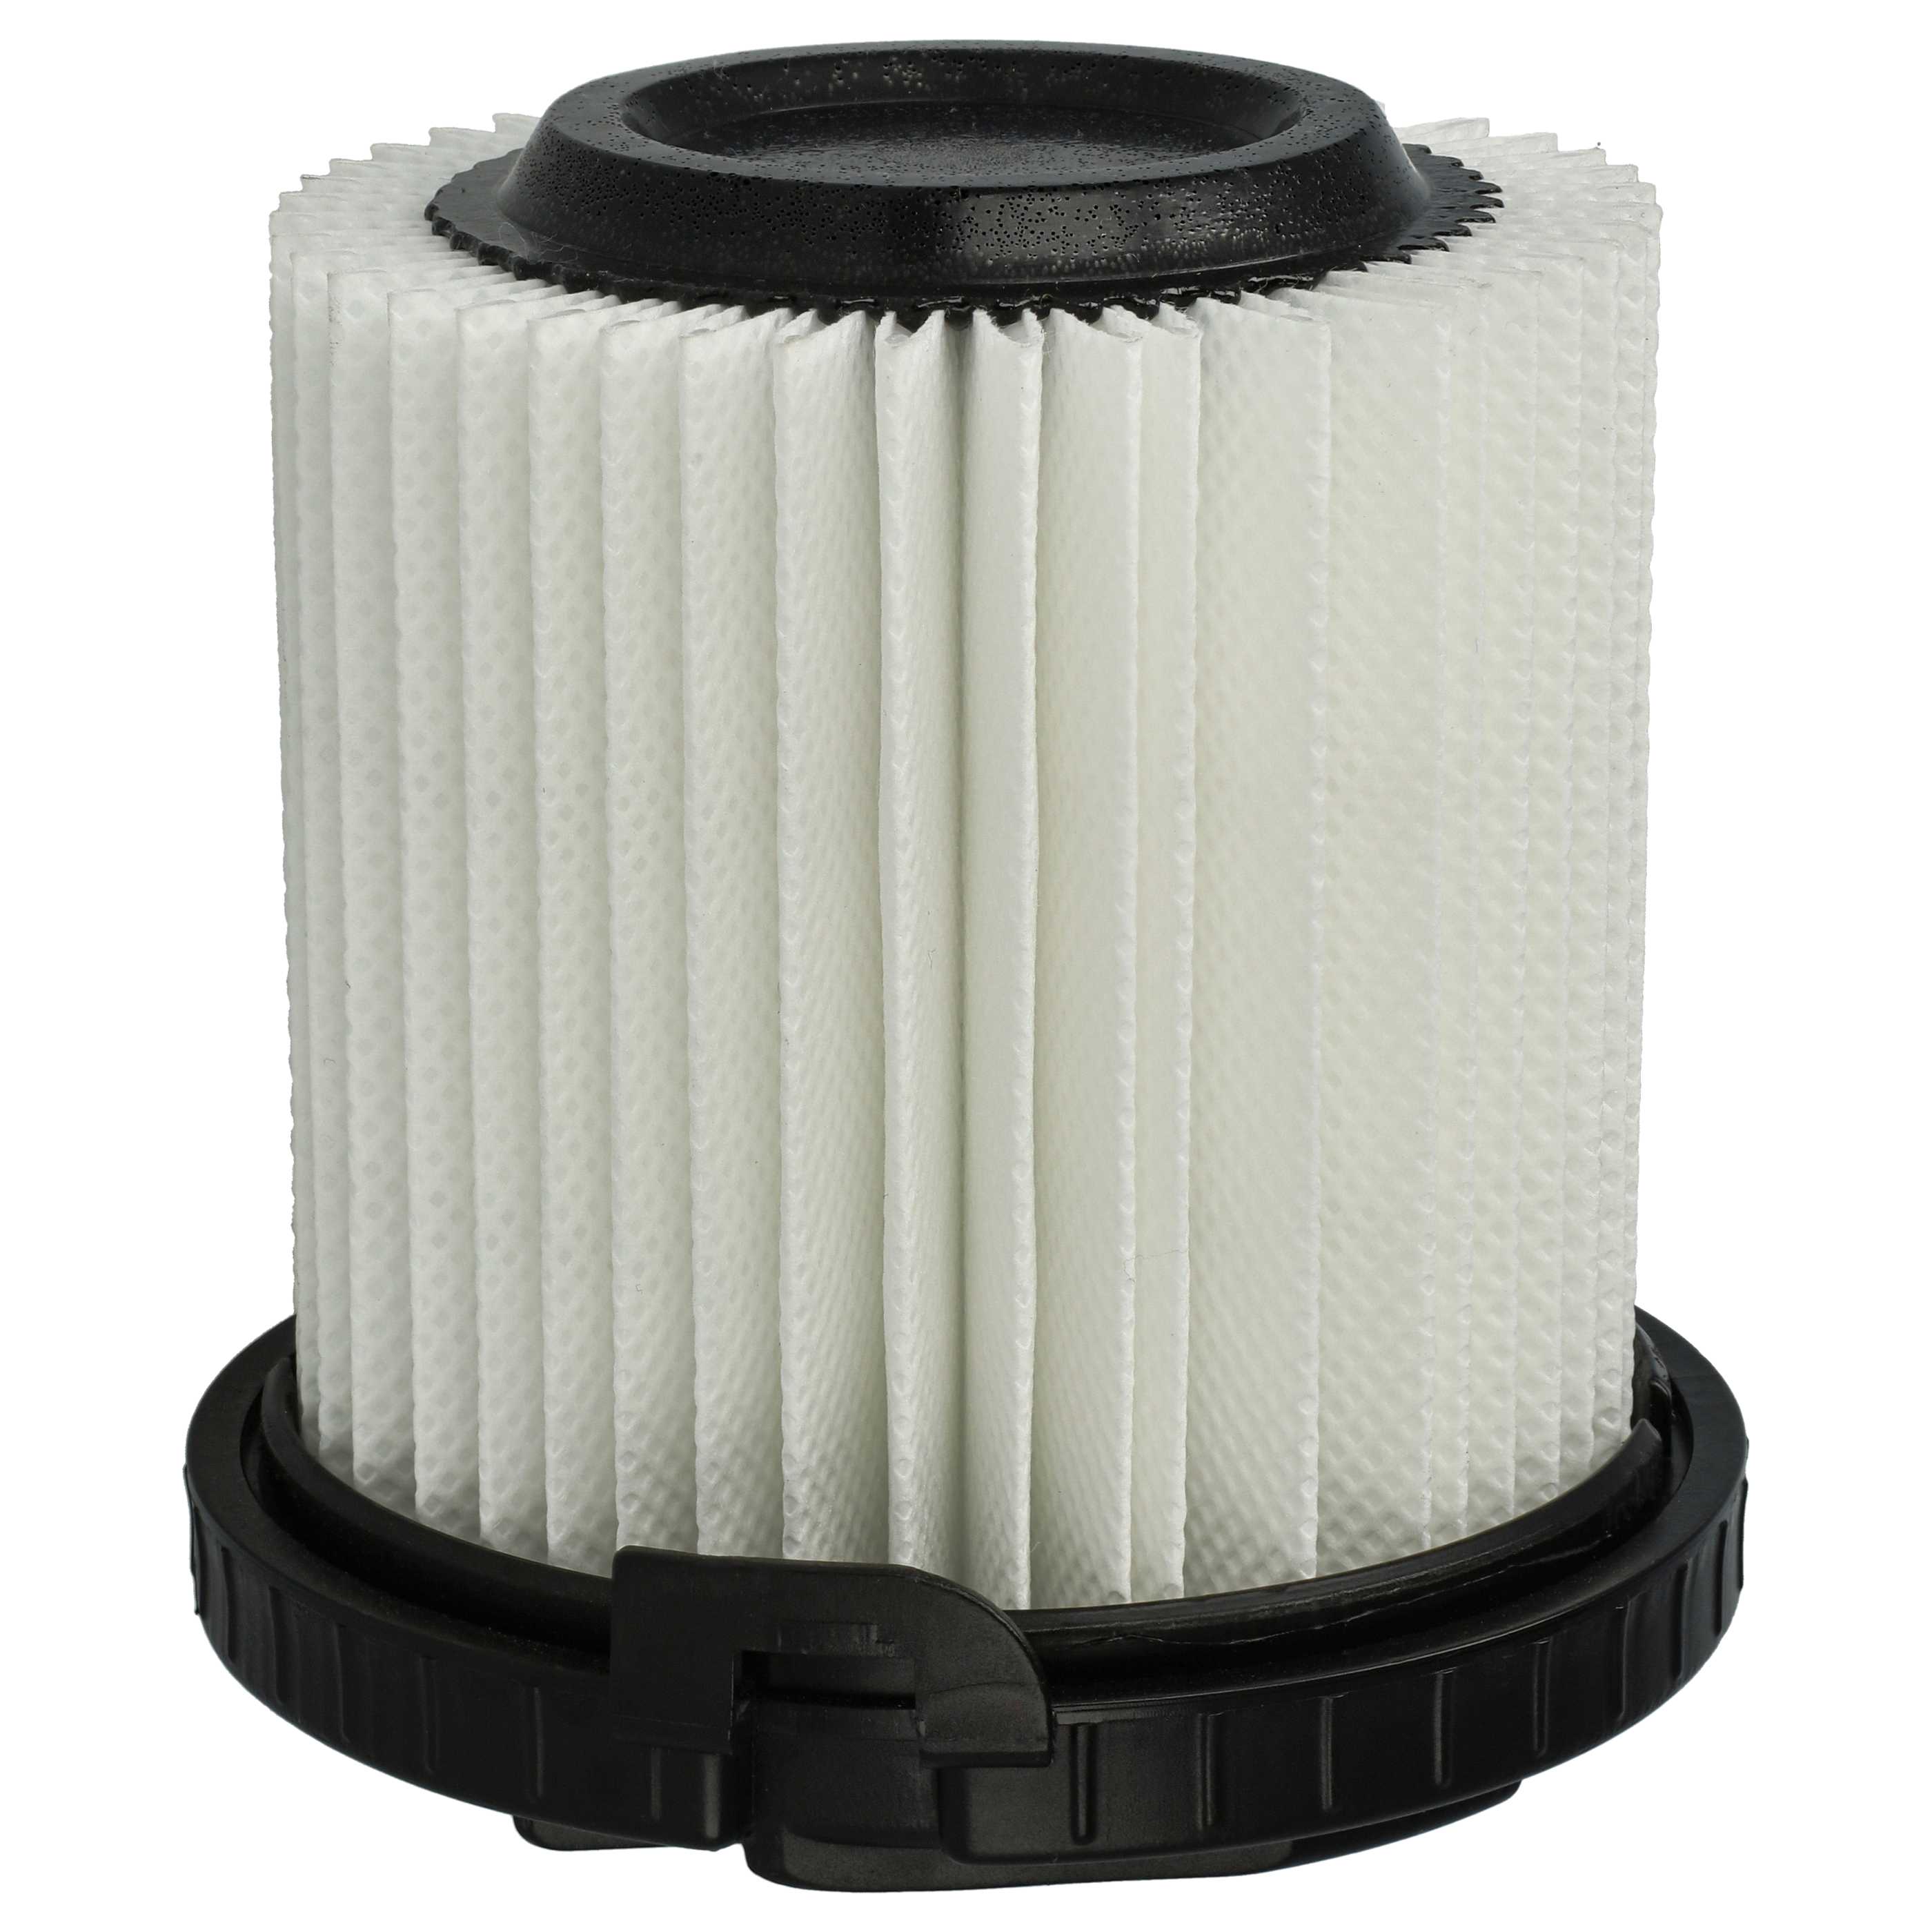 Filtre remplace EAN 4054278240985 pour aspirateur - Filtre de rechange F8